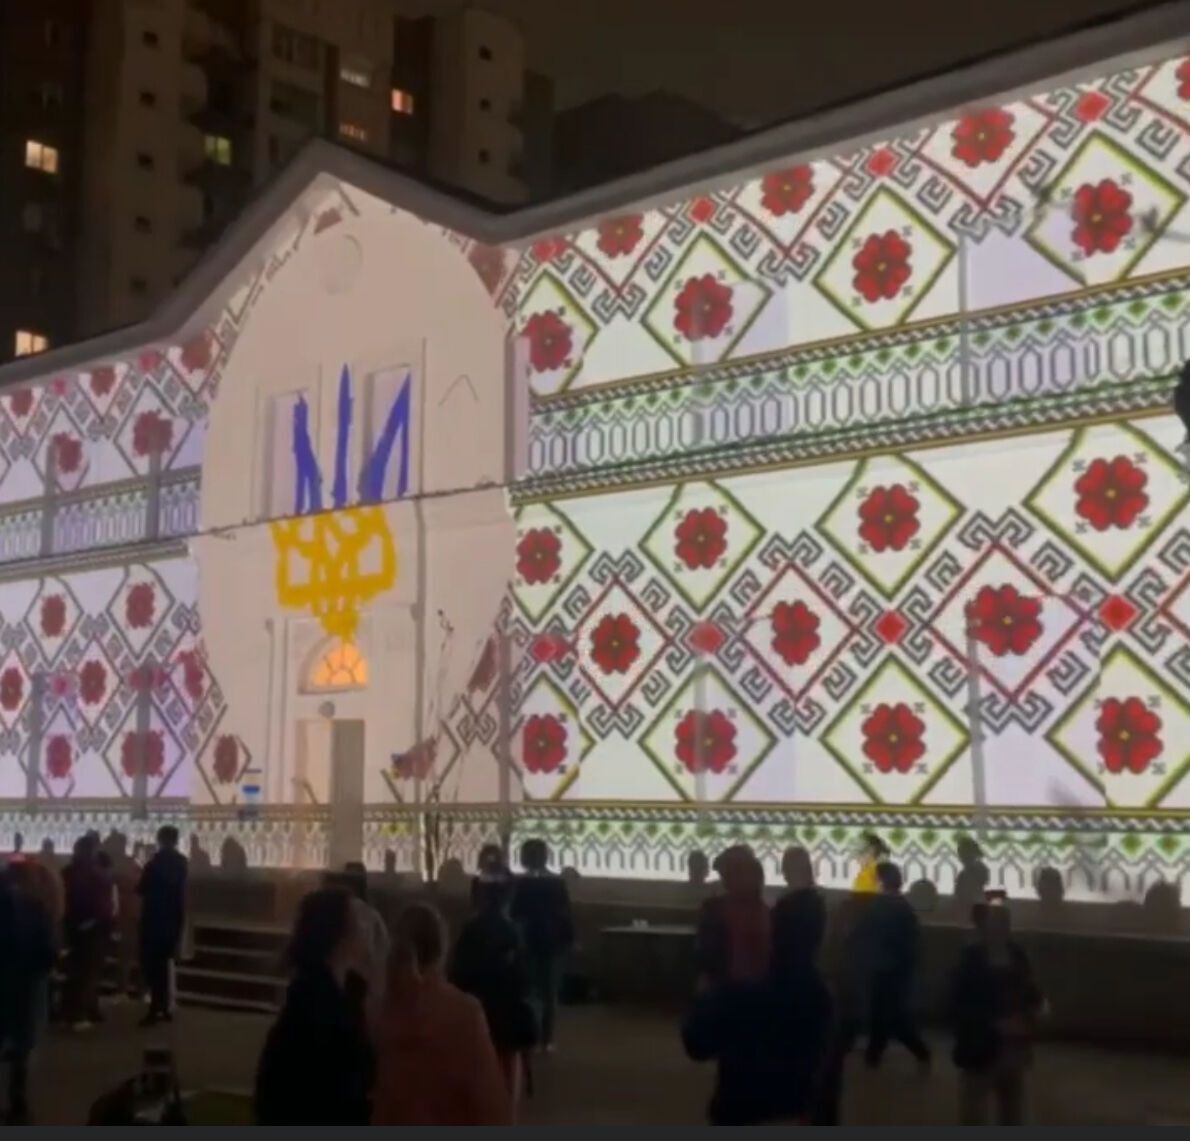 У Казахстані влаштували лазерне шоу на знак підтримки України. Відео